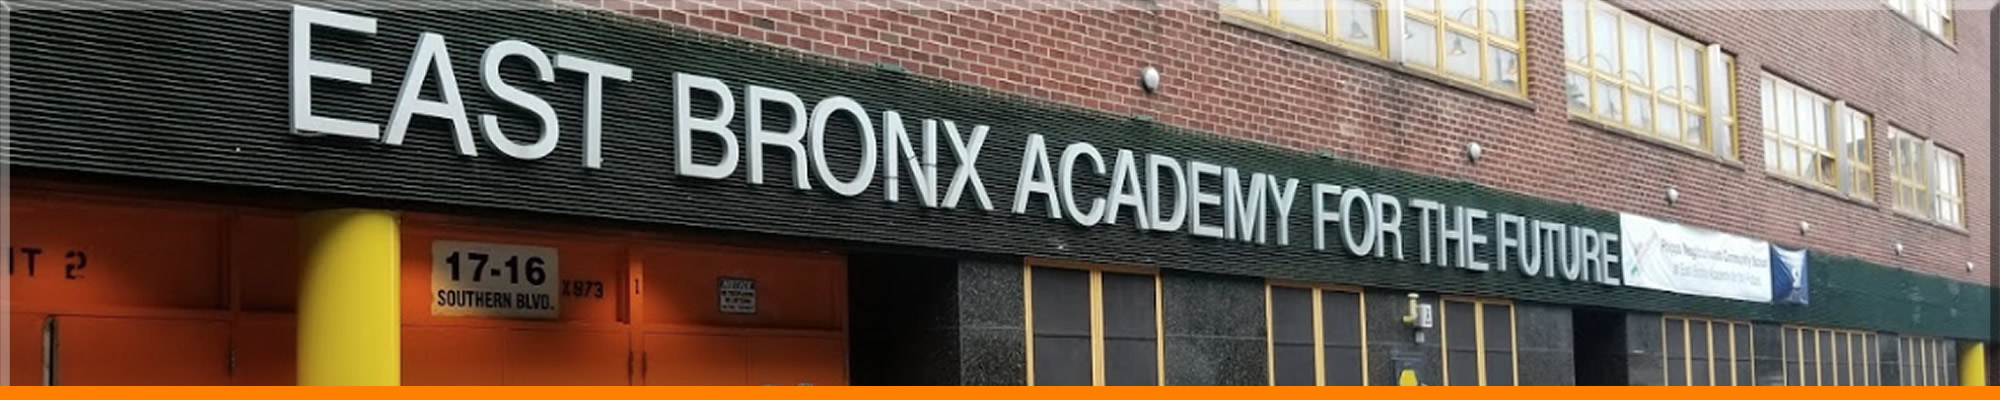 East Bronx Academy